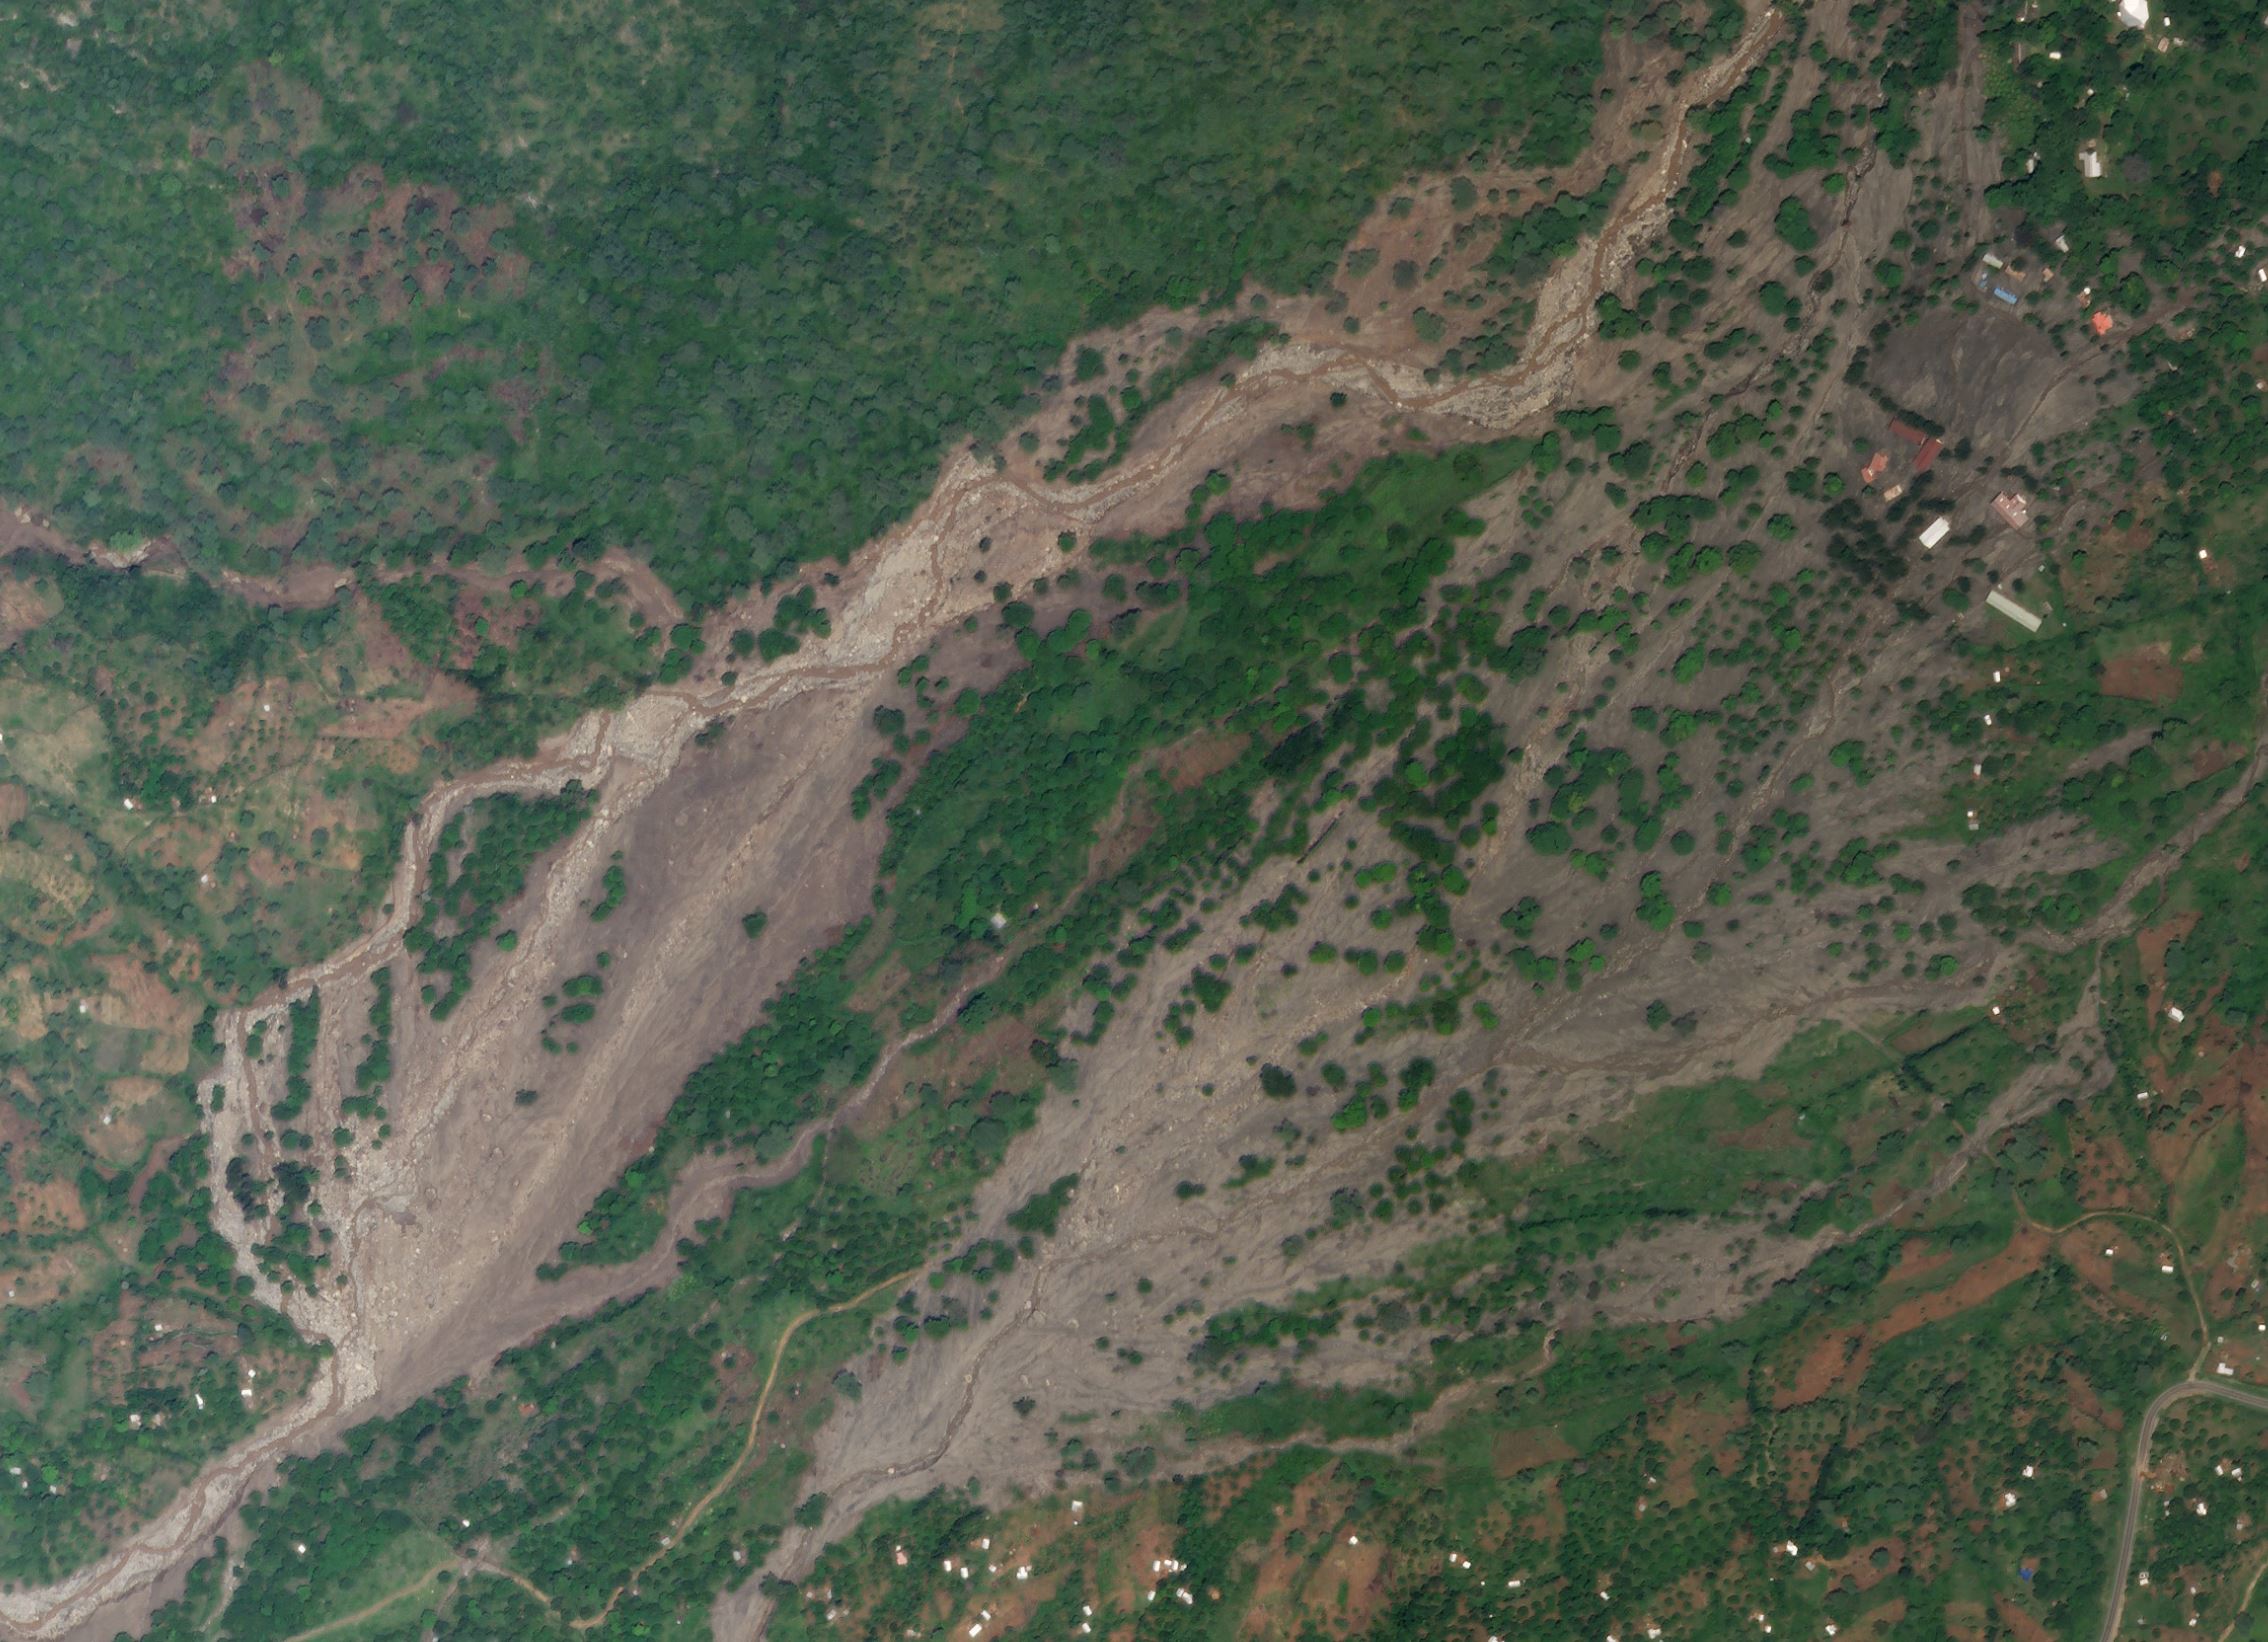 2020 Chesegon, West Pokot landslides